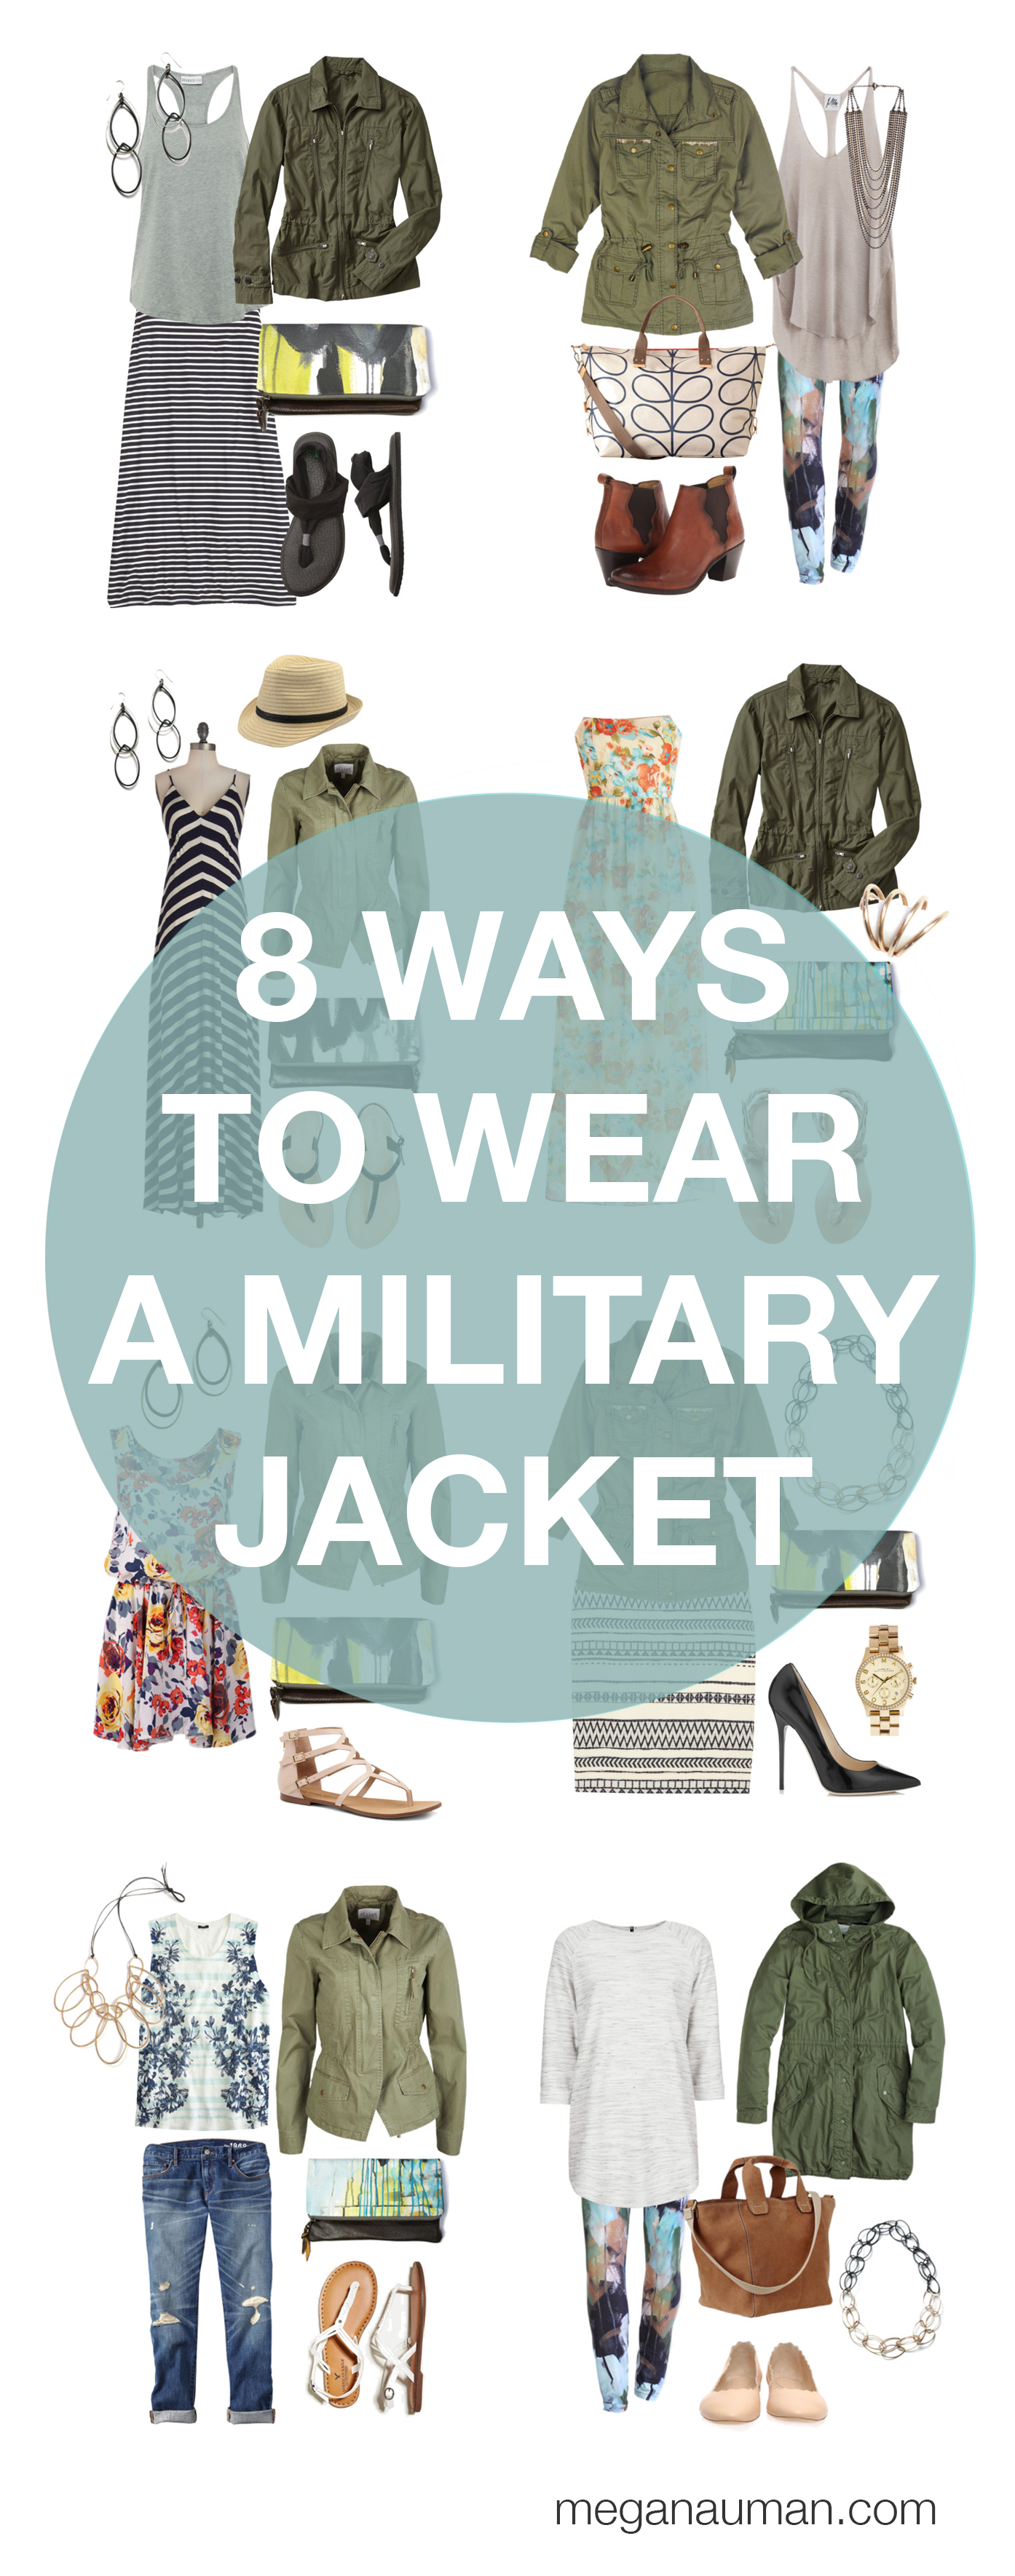 Outfits chaqueta Militar